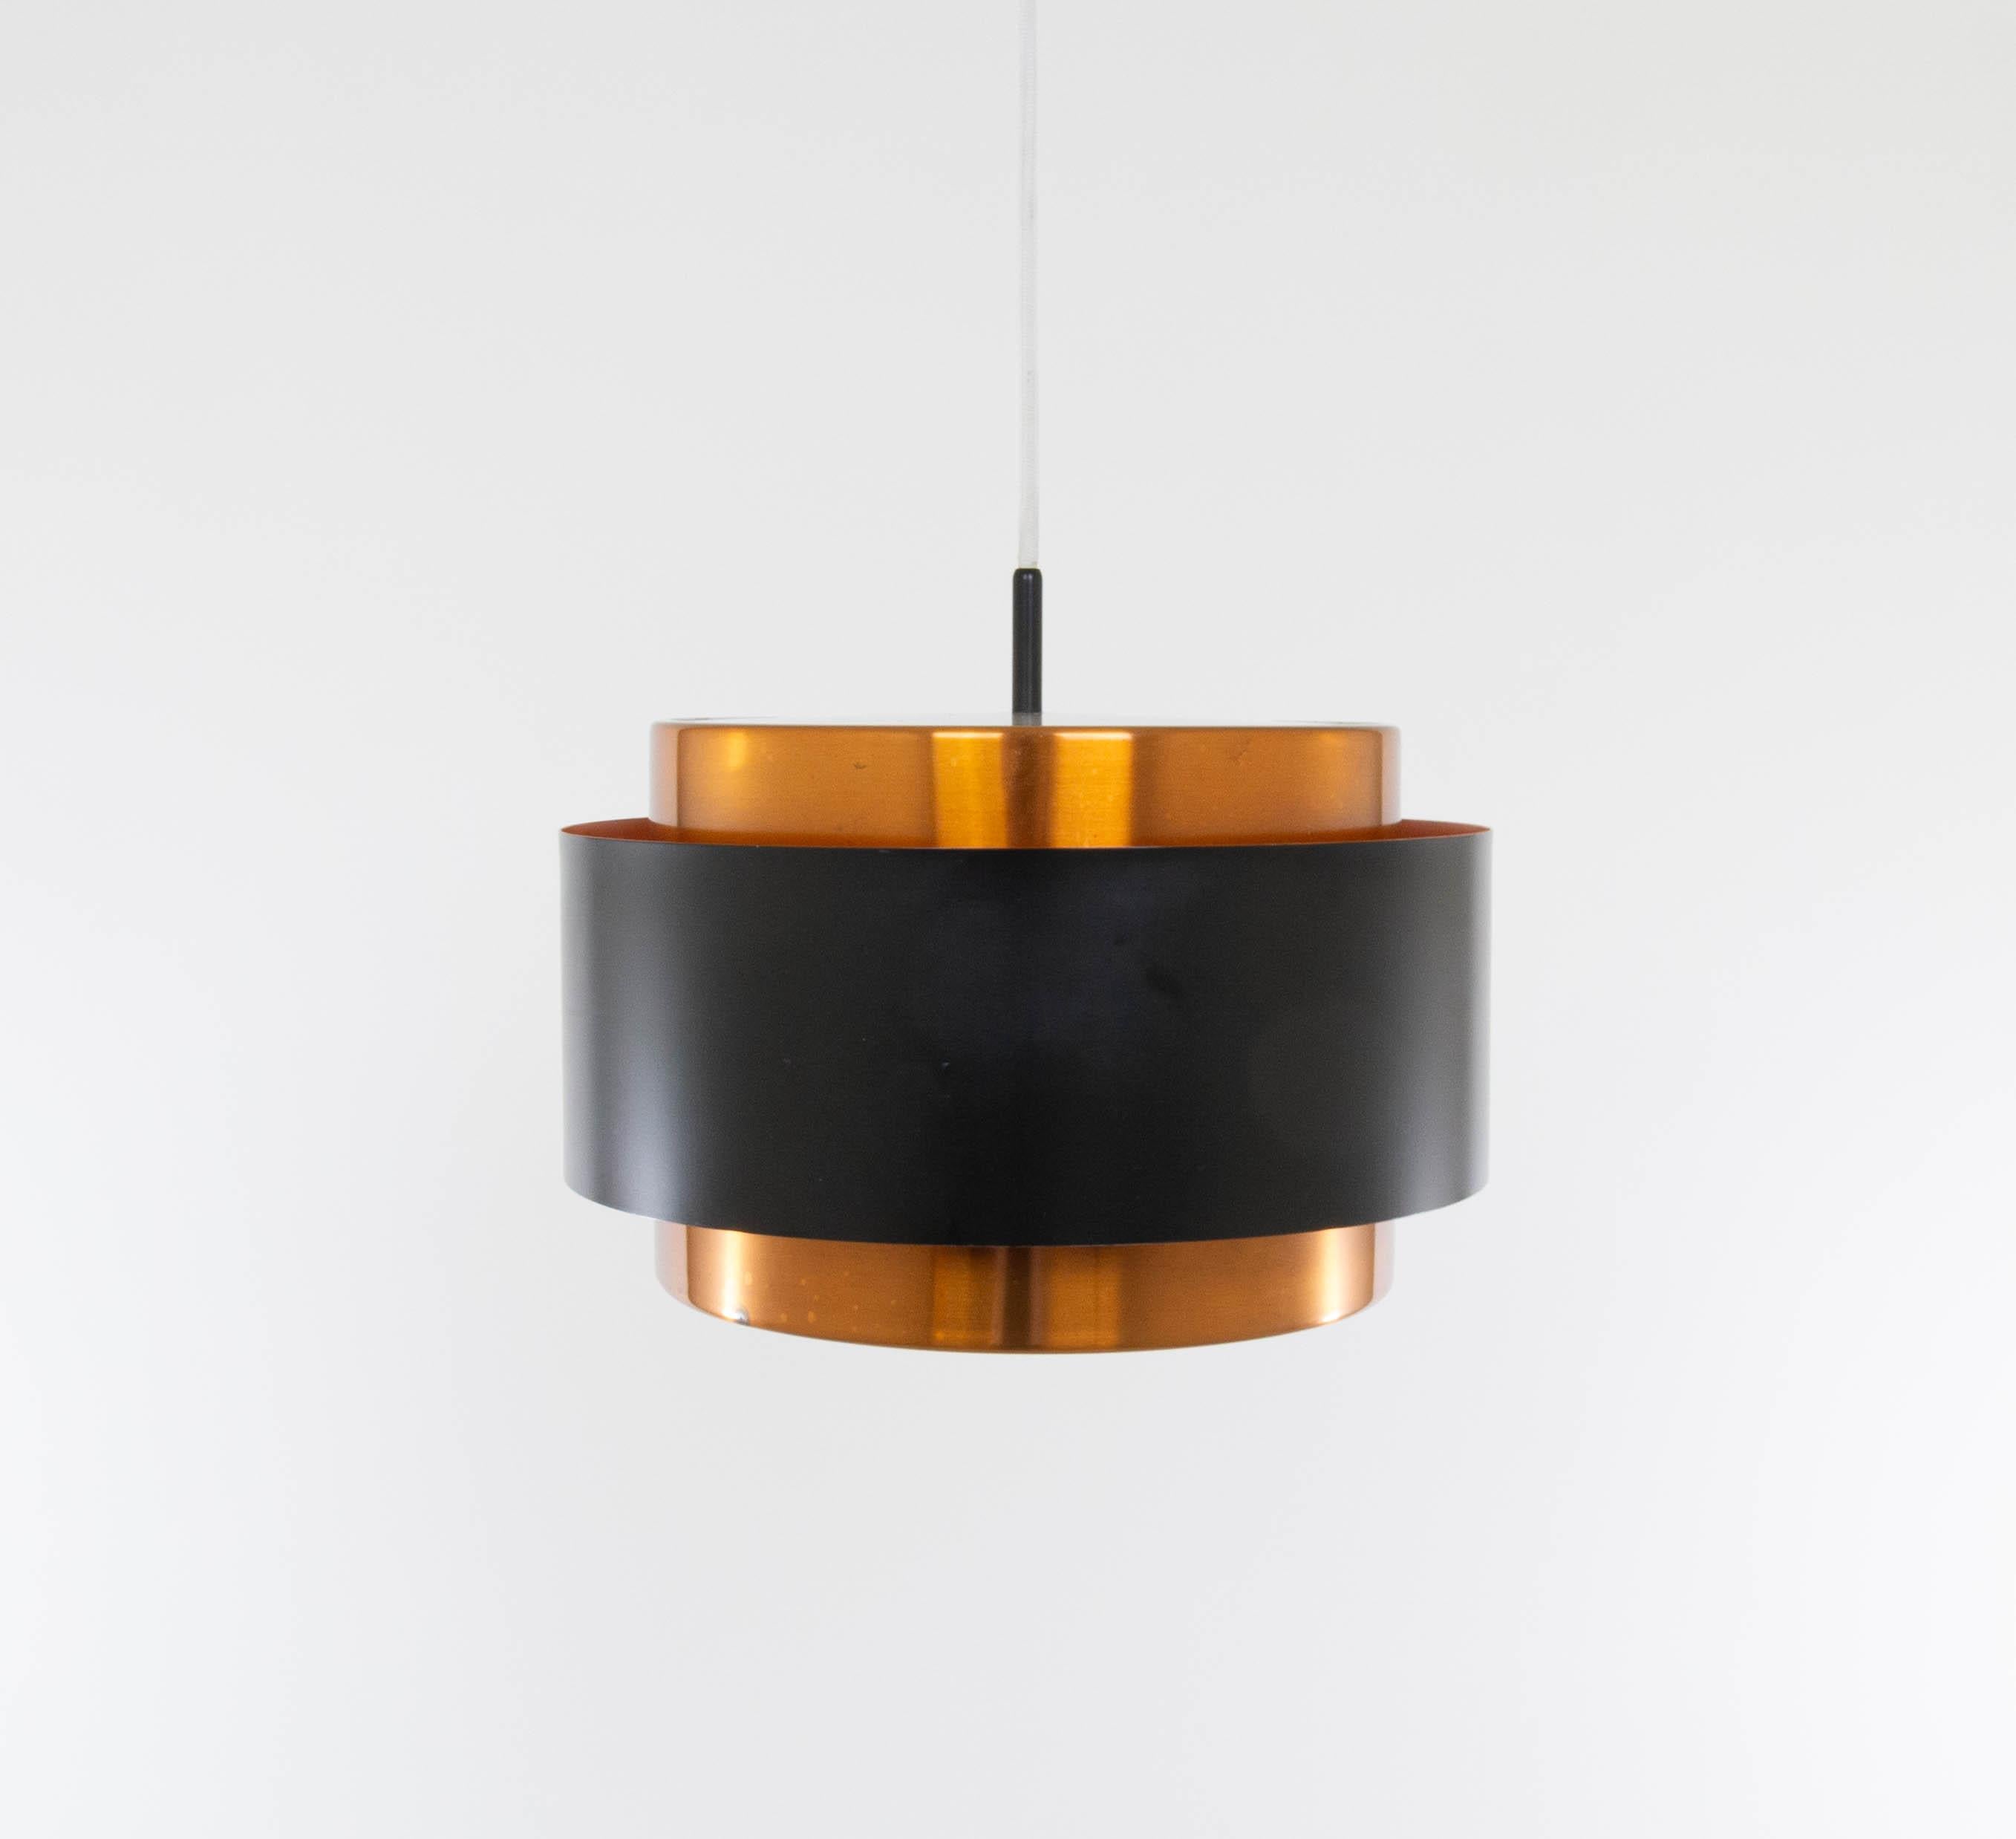 Suspension Saturn, conçue par le designer danois Jo Hammerborg et fabriquée par Fog & Mørup.

Le modèle est une structure composée de deux bandes cylindriques concentriques en cuivre qui sont maintenues ensemble par une bande laquée noire. En haut